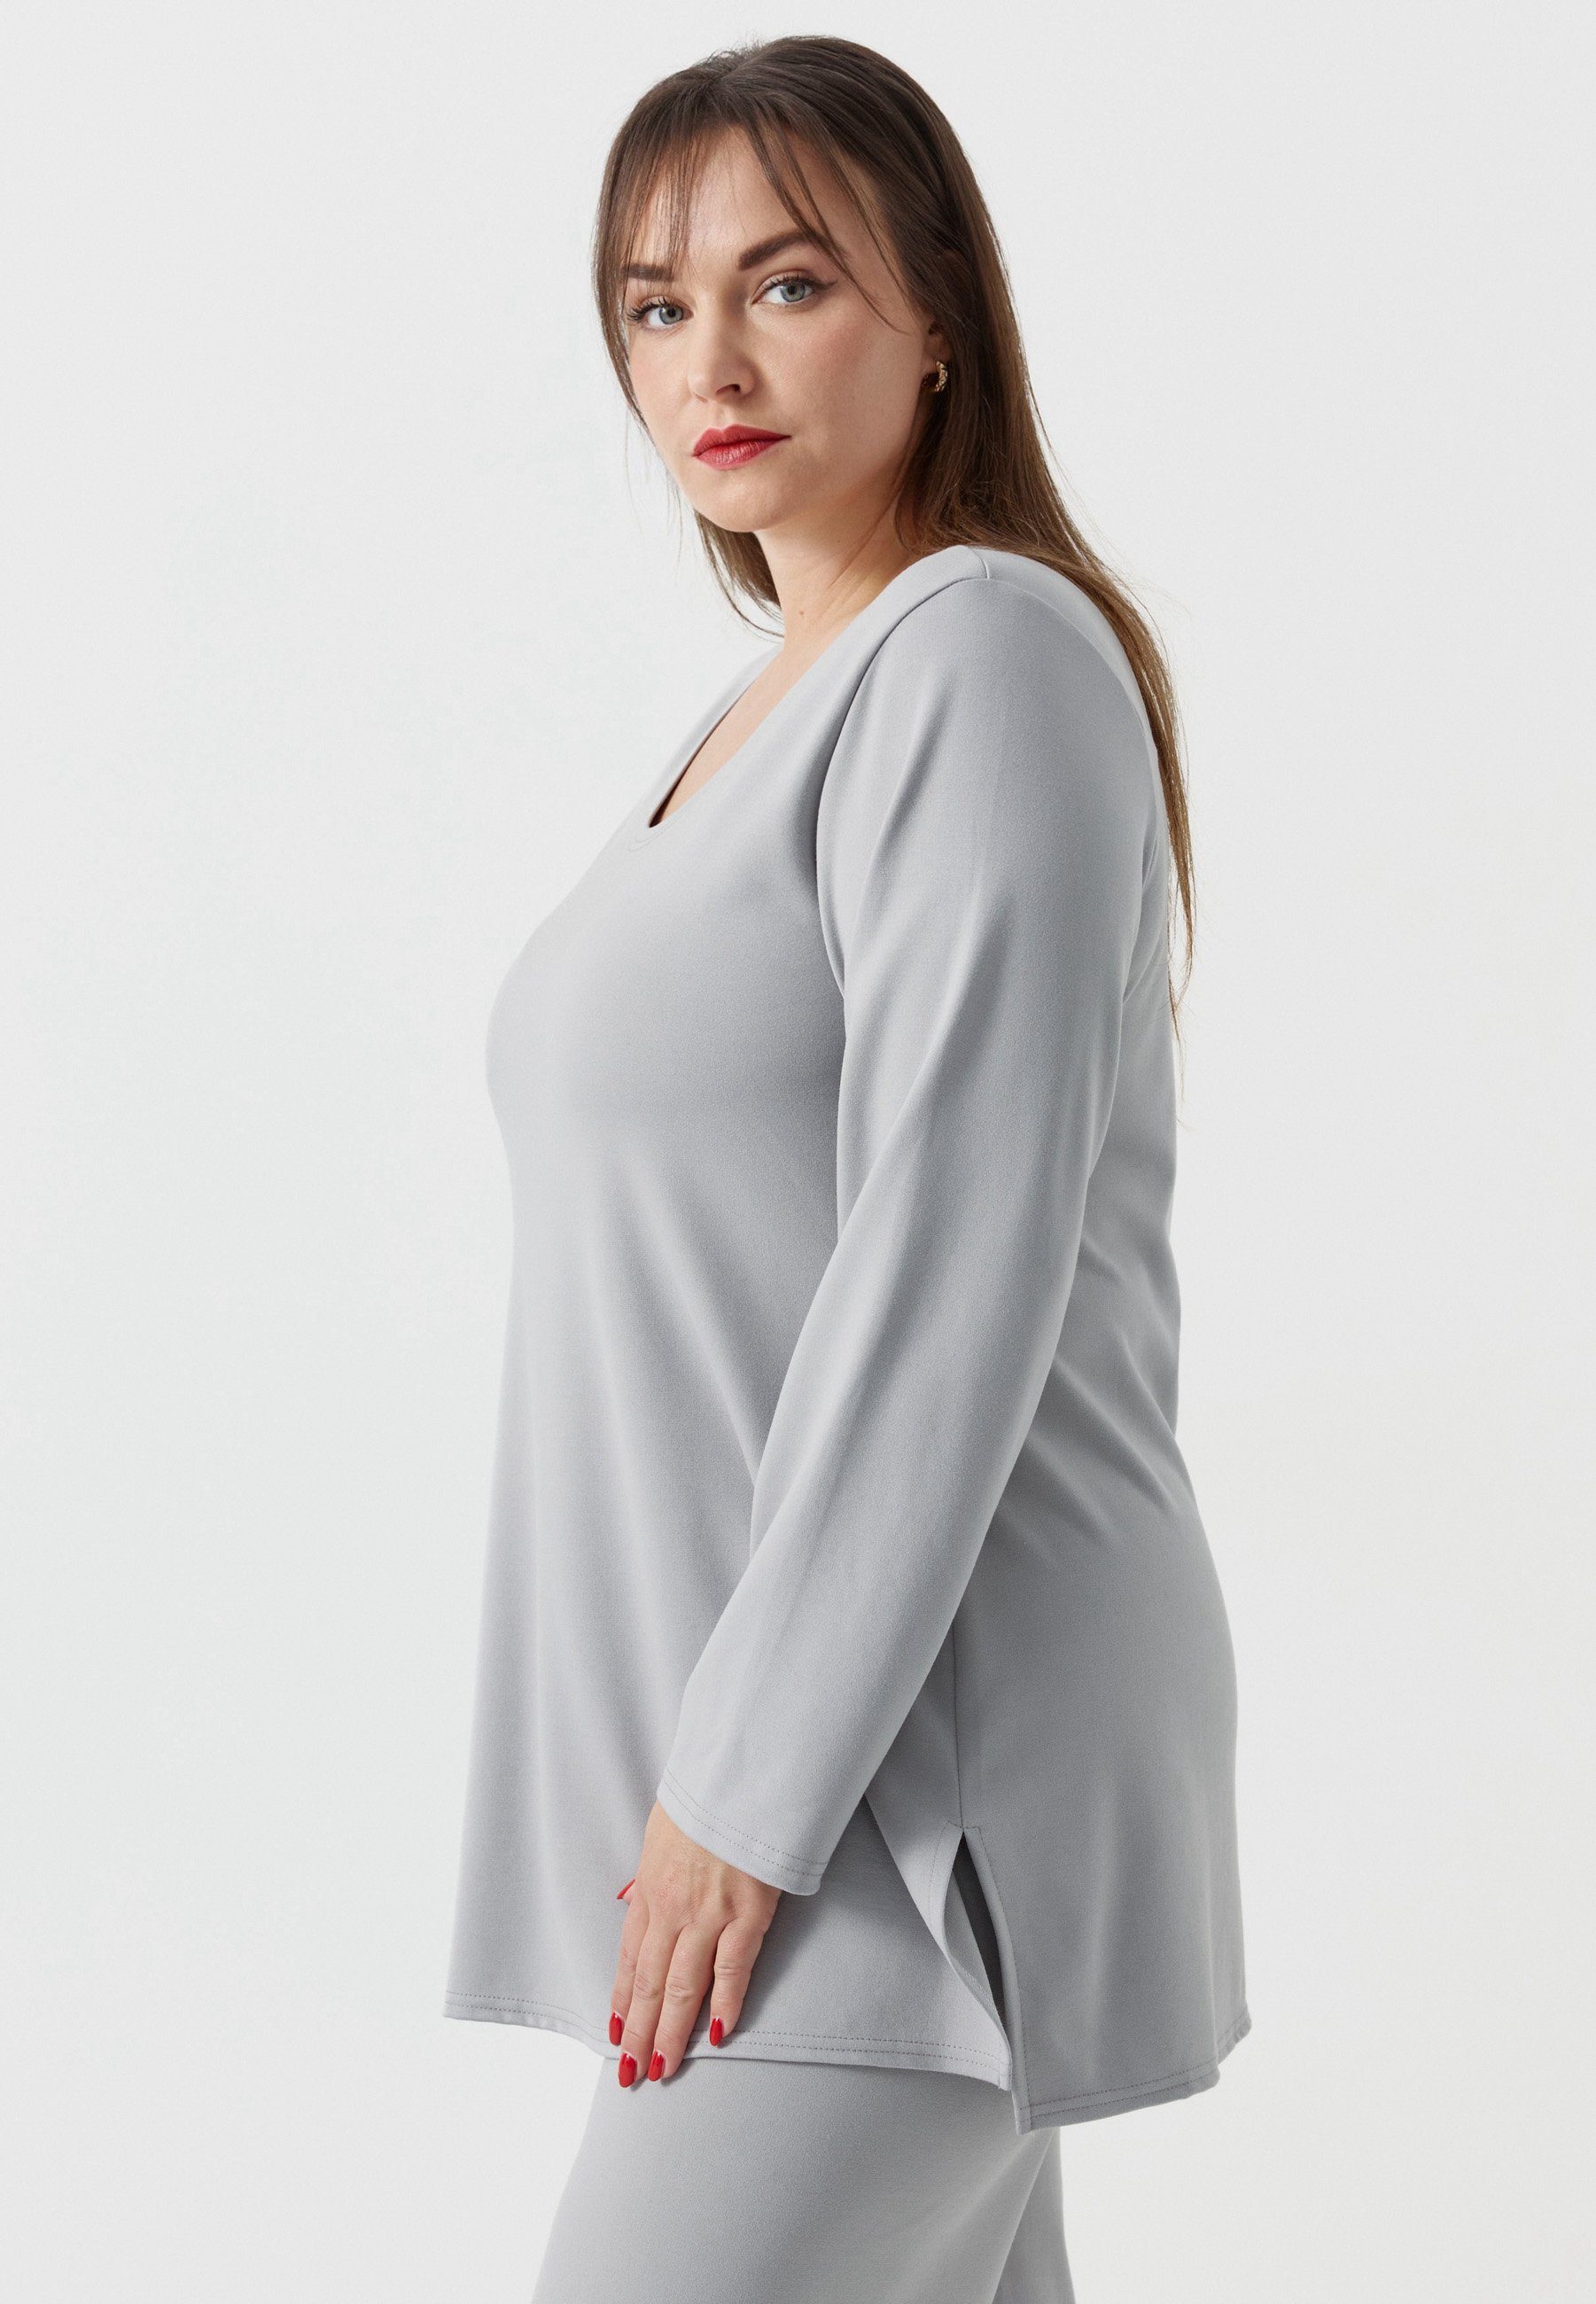 Kekoo Elasthan 'Essential' A-Linie mit Tunikashirt Grau Shirt Longsleeve